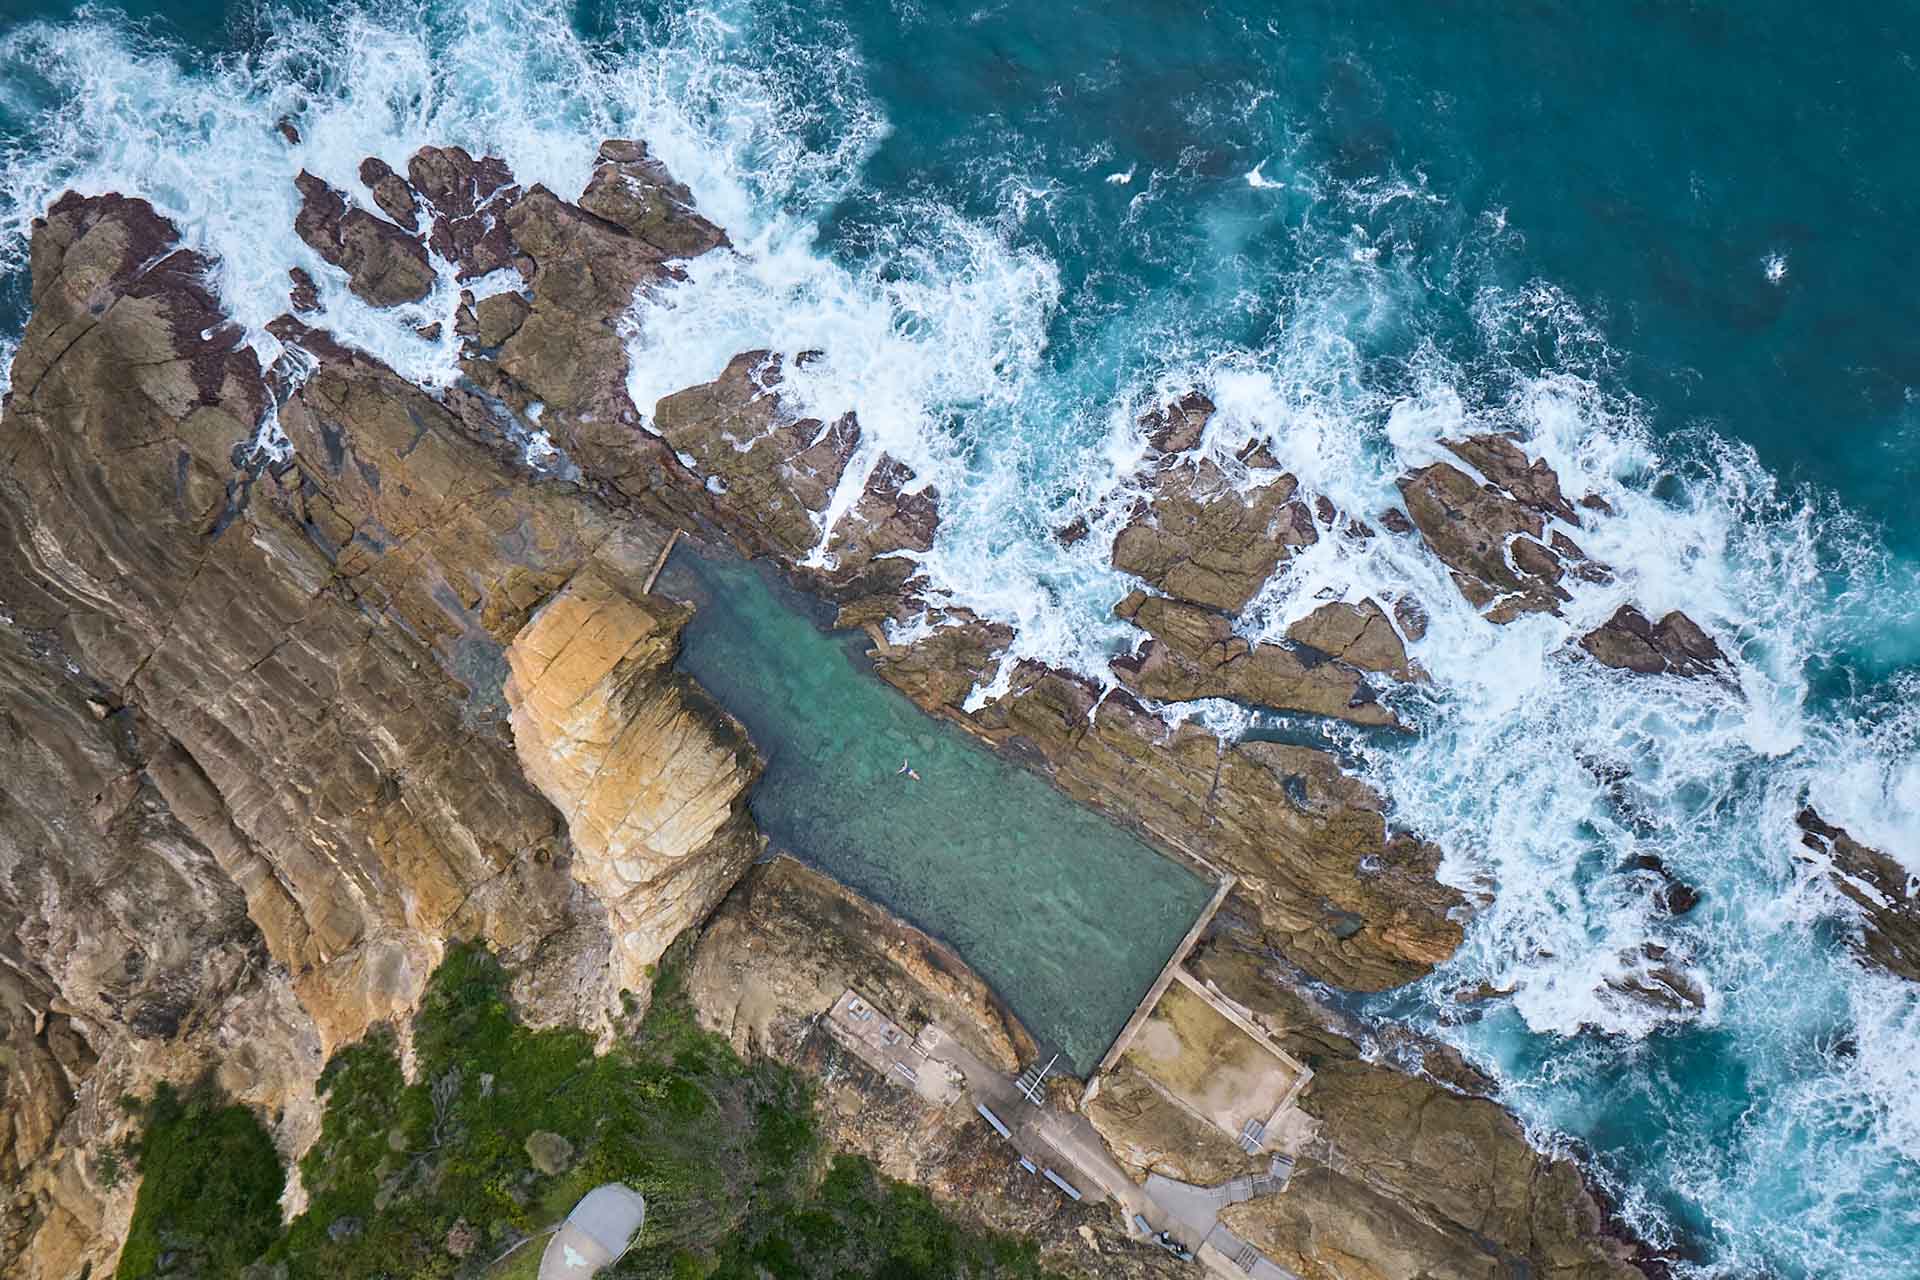 Bermagui blue pool, Sapphire Coast NSW - rockpool